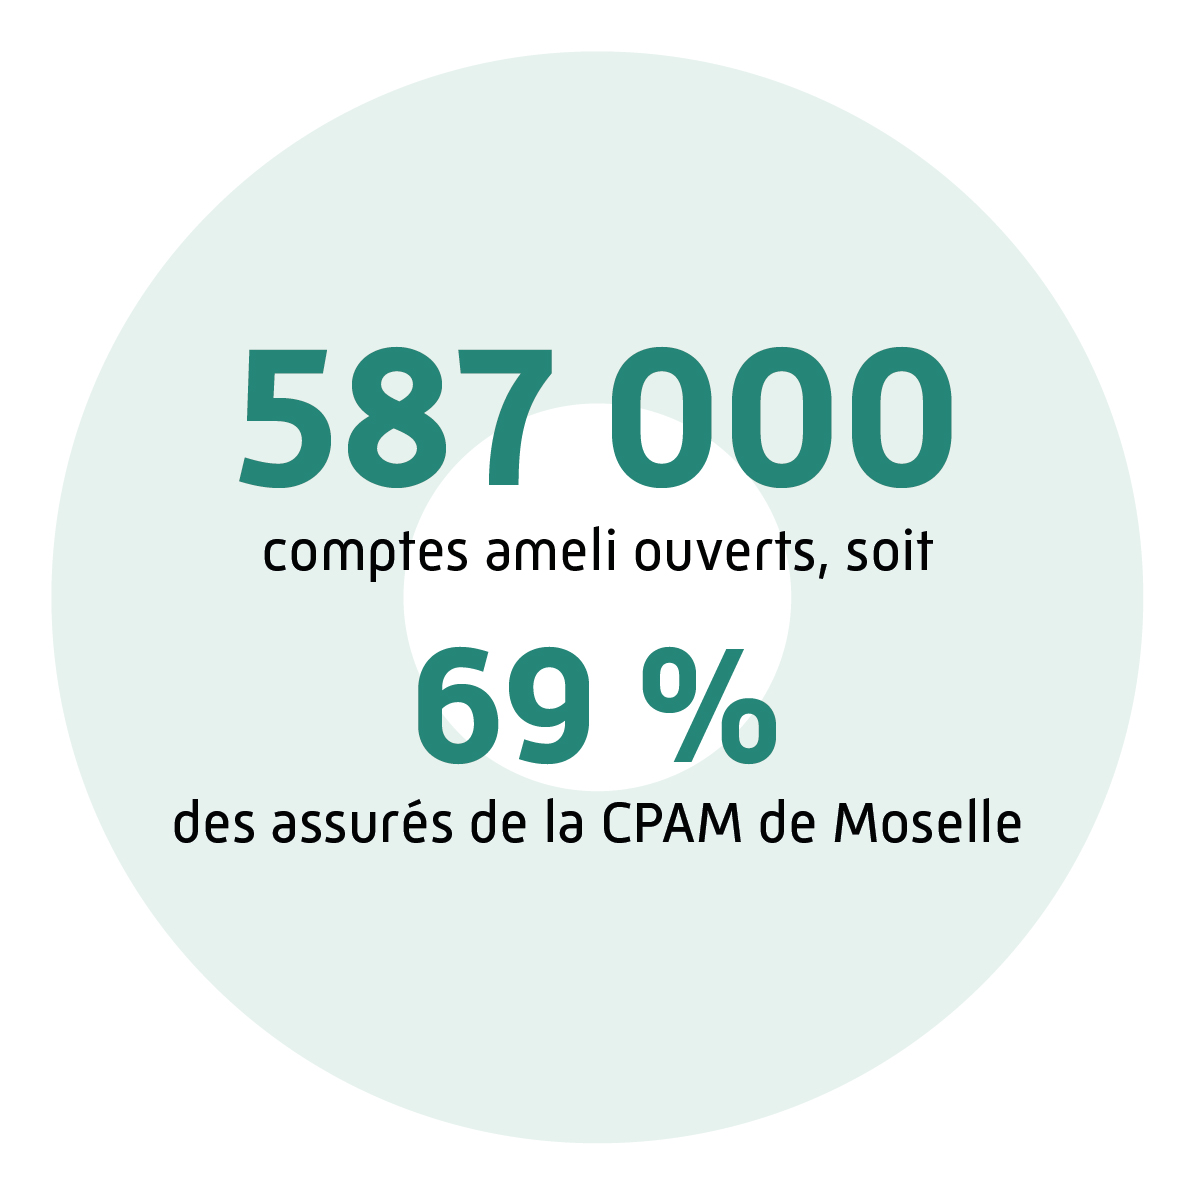 587 000 comptes ameli ouverts, soit 69 % des assurés de la CPAM de Moselle.